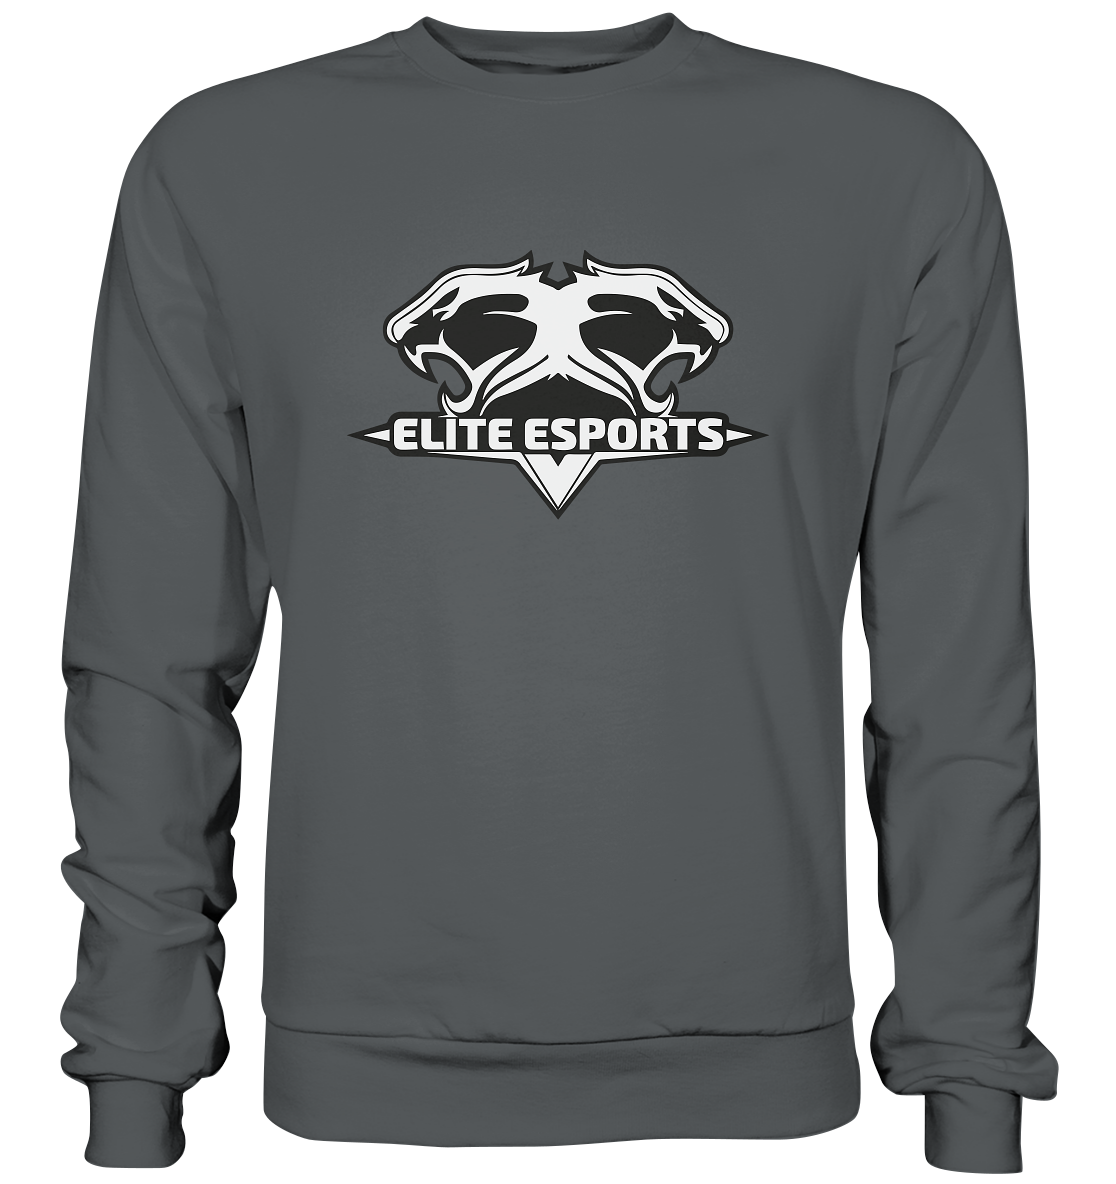 ELITE ESPORTS - Basic Sweatshirt